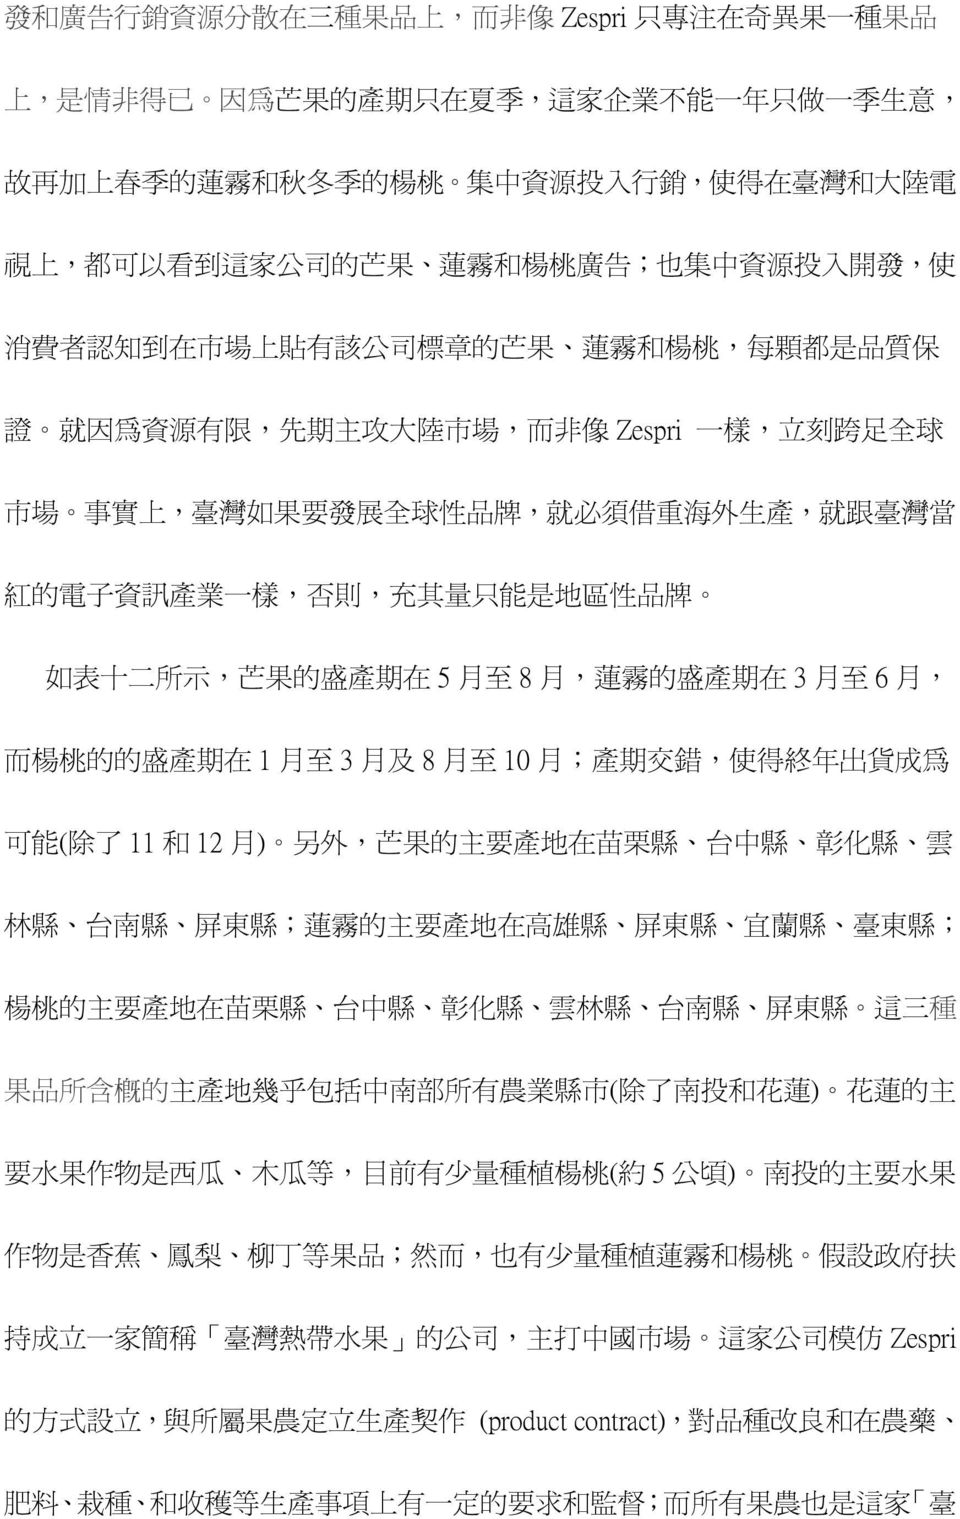 事 實 上, 臺 灣 如 果 要 發 展 全 球 性 品 牌, 就 必 須 借 重 海 外 生 產, 就 跟 臺 灣 當 紅 的 電 子 資 訊 產 業 一 樣, 否 則, 充 其 量 只 能 是 地 區 性 品 牌 如 表 十 二 所 示, 芒 果 的 盛 產 期 在 5 月 至 8 月, 蓮 霧 的 盛 產 期 在 3 月 至 6 月, 而 楊 桃 的 的 盛 產 期 在 1 月 至 3 月